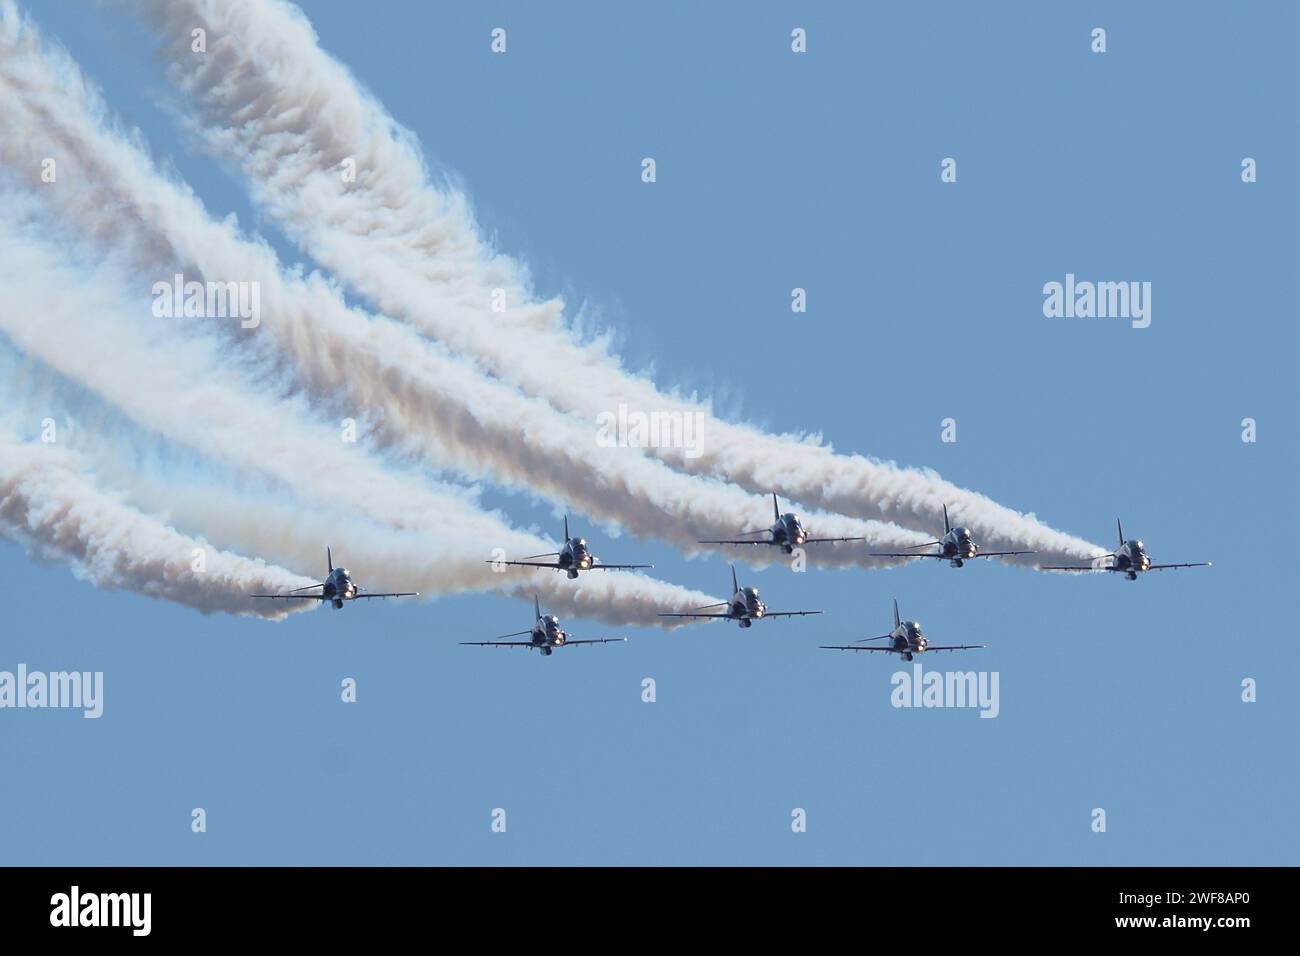 Il team Air display delle frecce rosse vola con i suoi jet con lo schermo fumi che scorre dietro di loro. Foto Stock